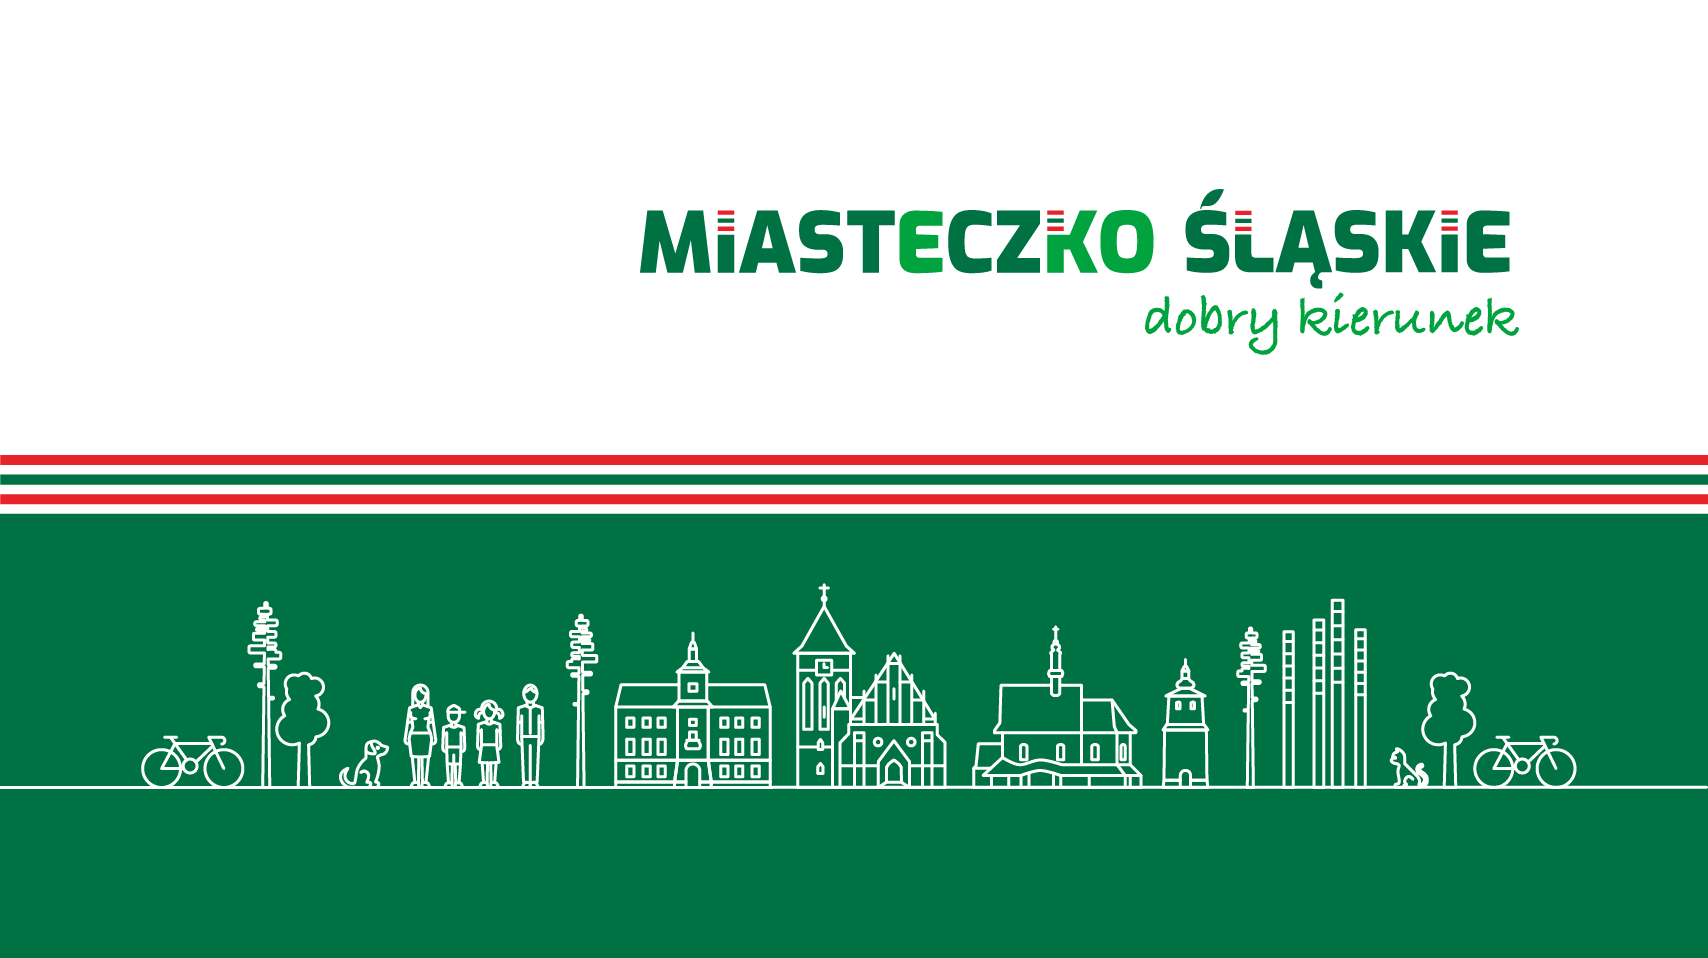 Zarządzenie nr 942/21 Burmistrza Miasta Miasteczko Śląskie